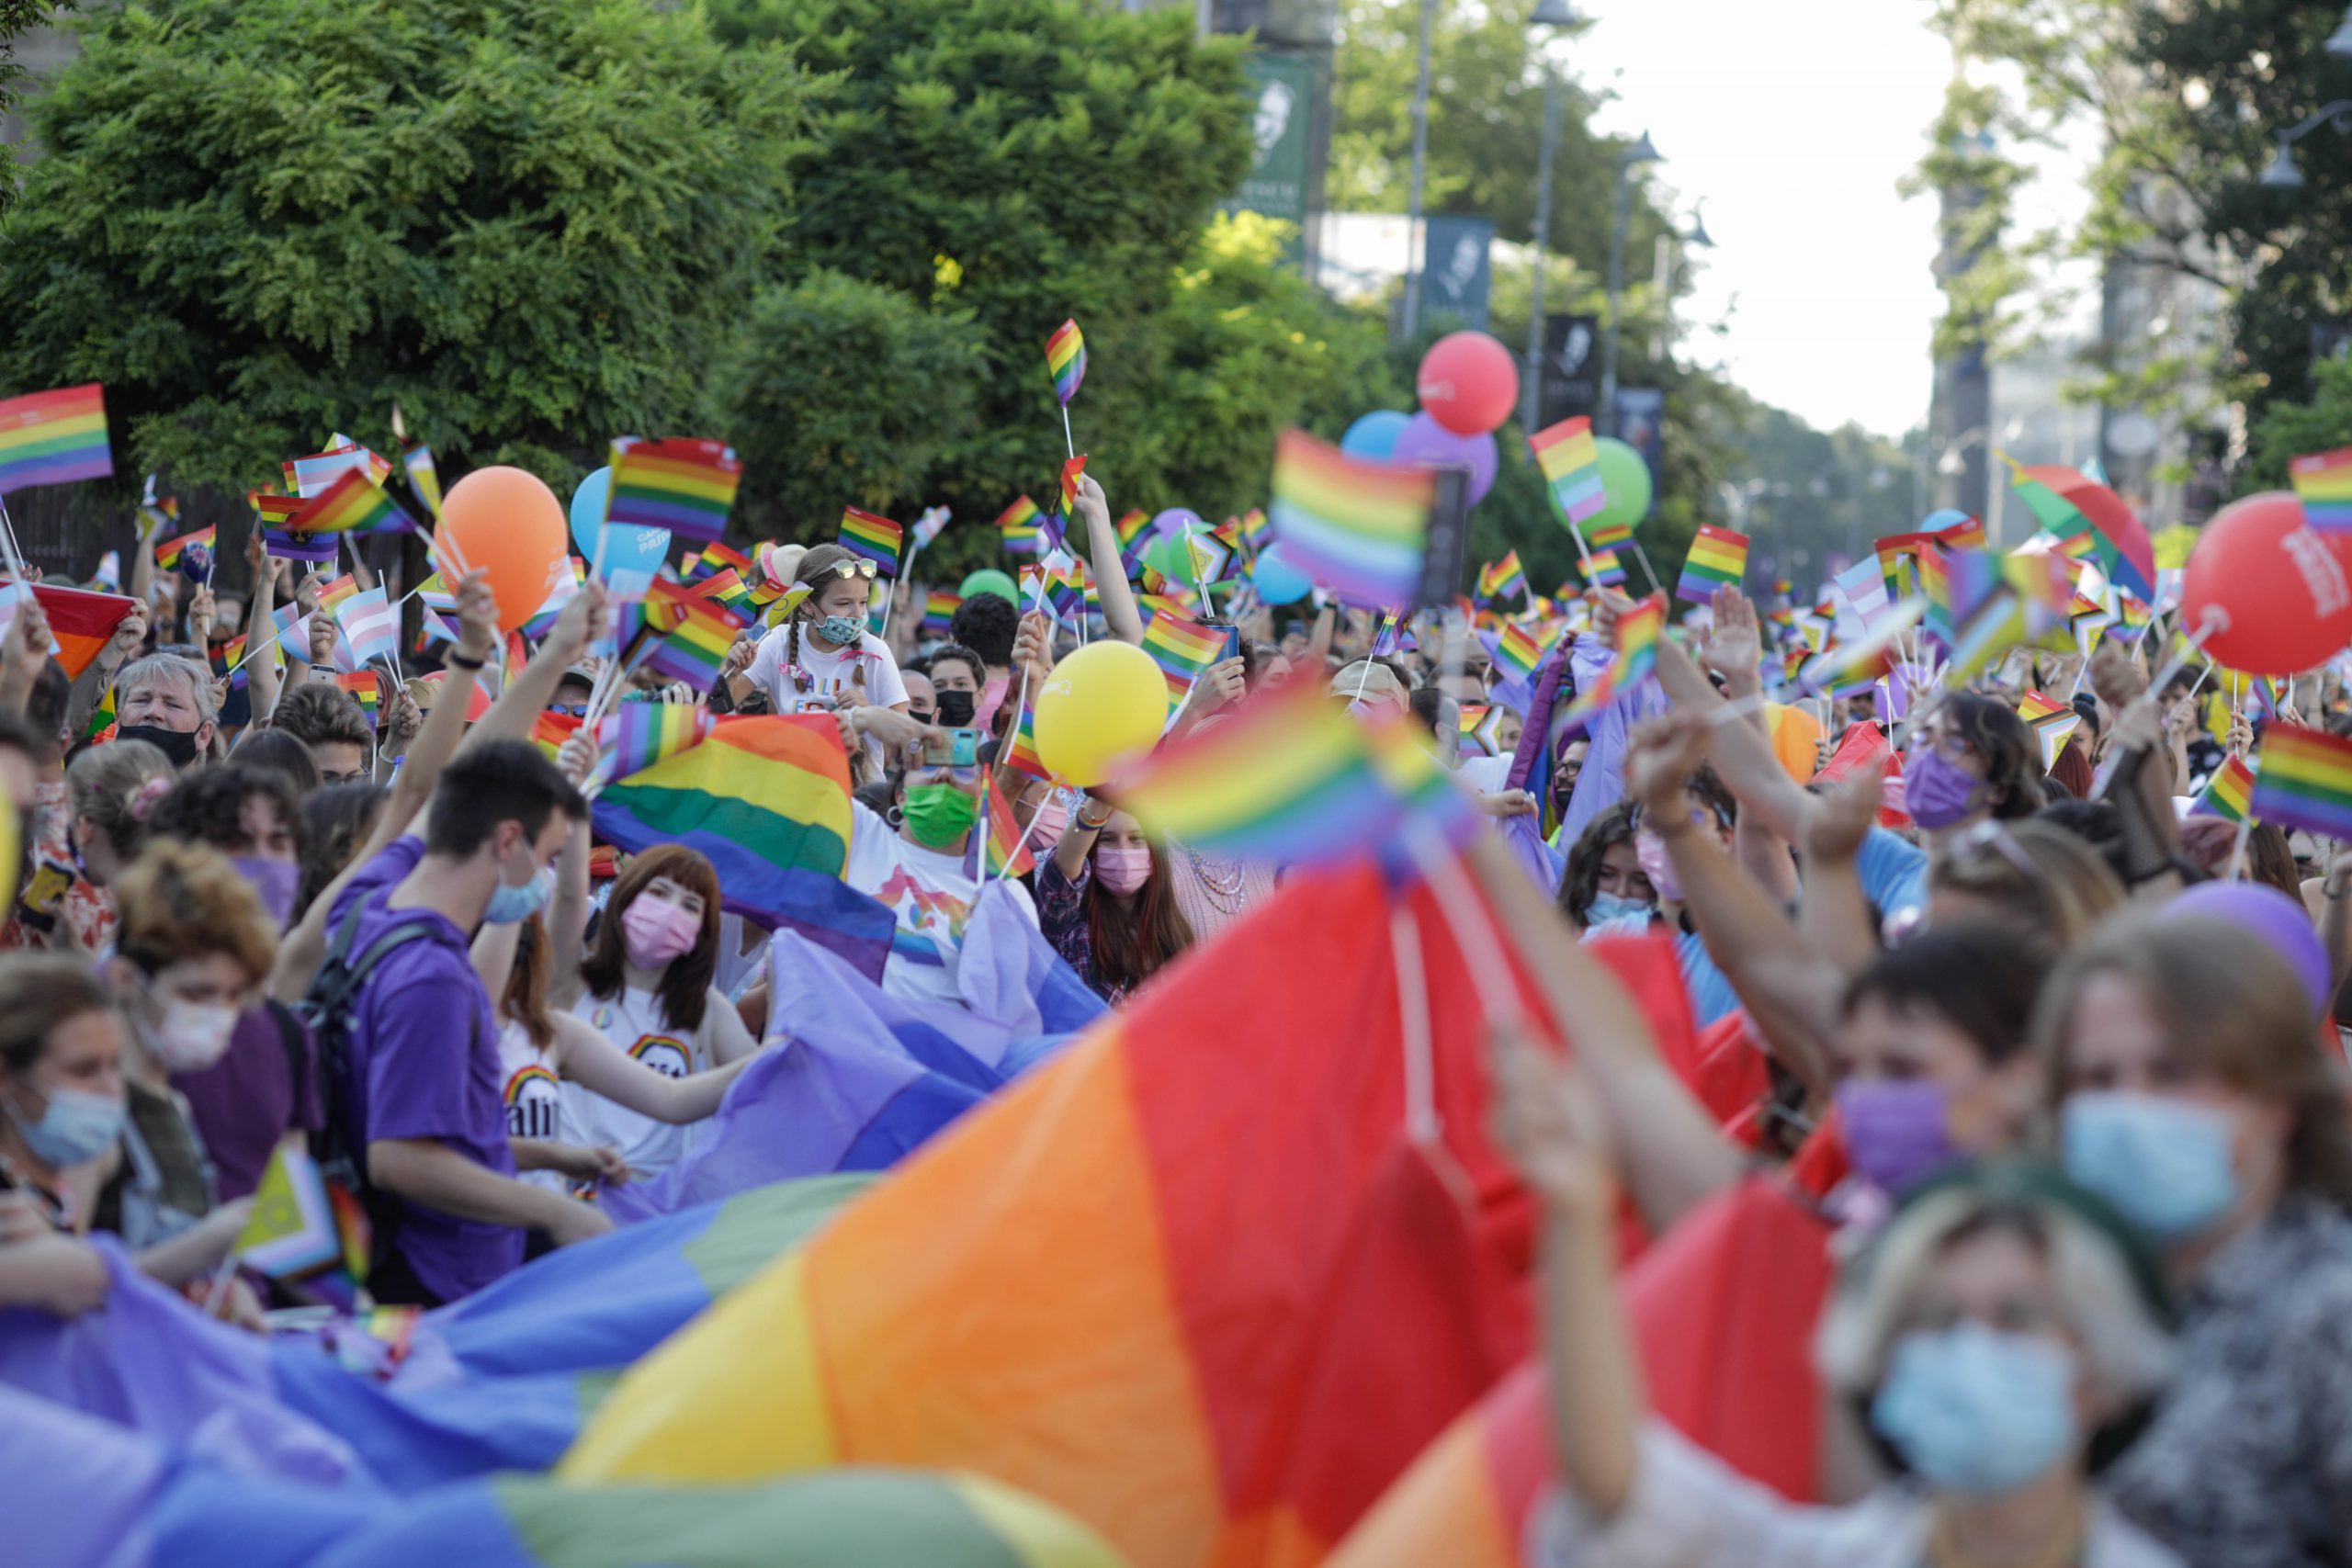 Bucharest Pride | Trafic rutier restricționat în Capitală / Peste 2 000 de persoane prezente (FOTO)